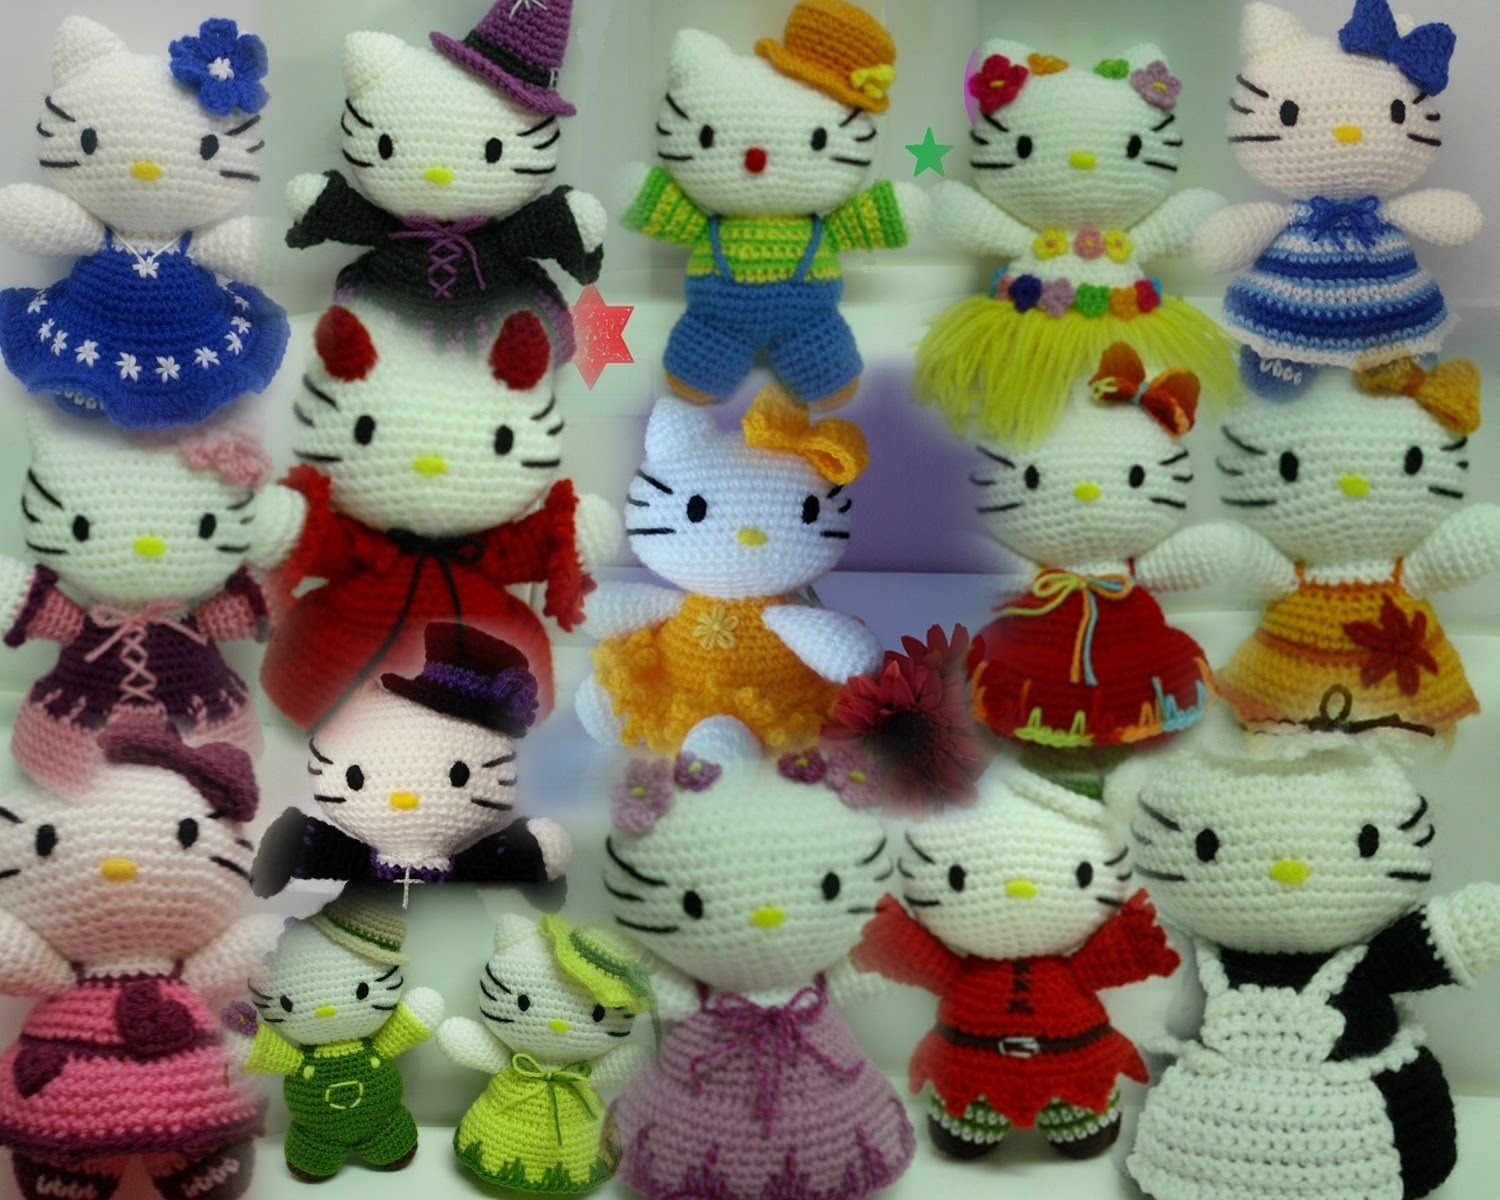 Colección crochet (amigurumis), acceso a tutoriales (hello kitty, muñeco nieve y otros)